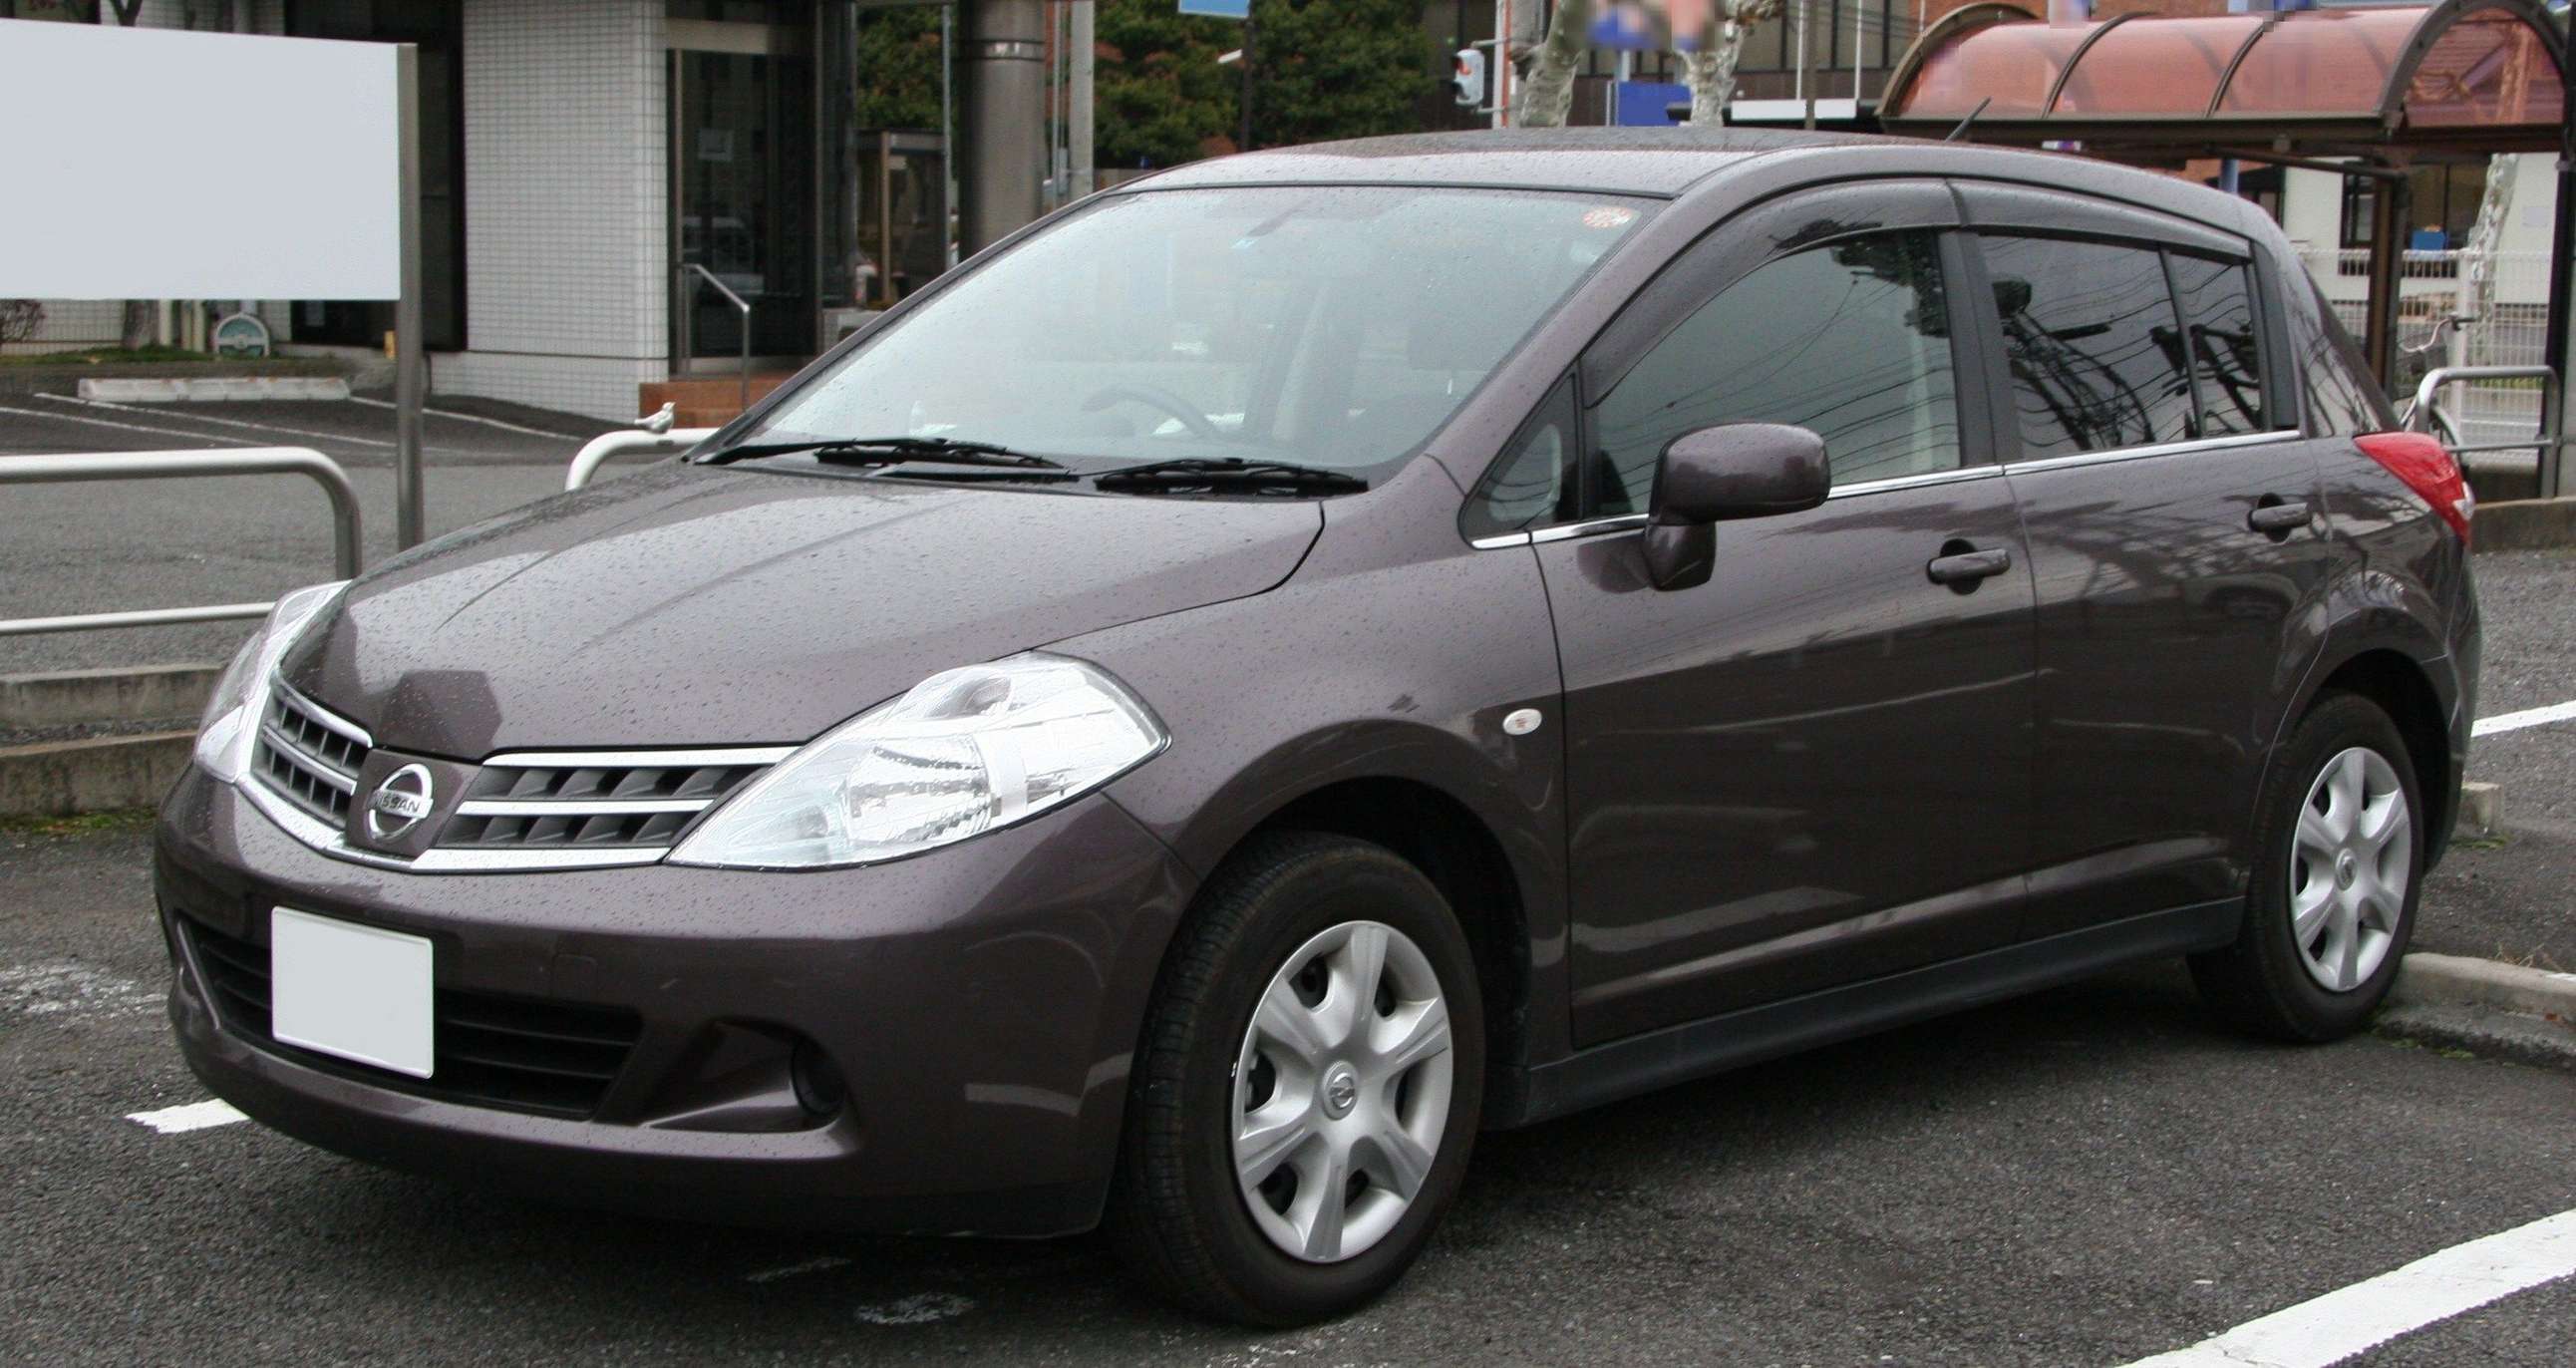 Nissan_Tiida